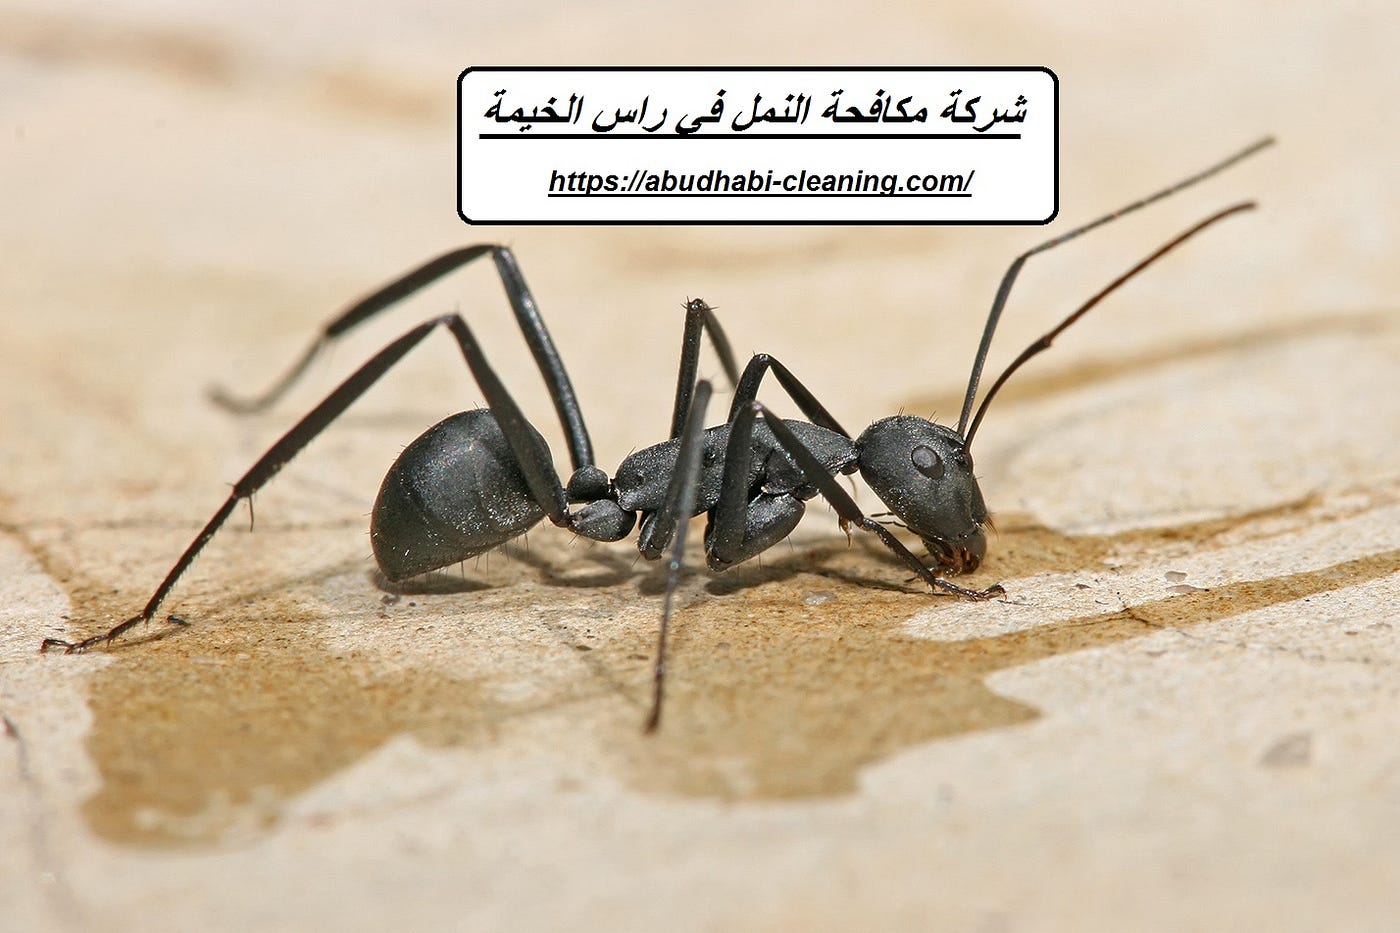 شركة مكافحة النمل في راس الخيمة. تتميز شركة مكافحة النمل في راس الخيمة… |  by jawharat-almansoura | Medium